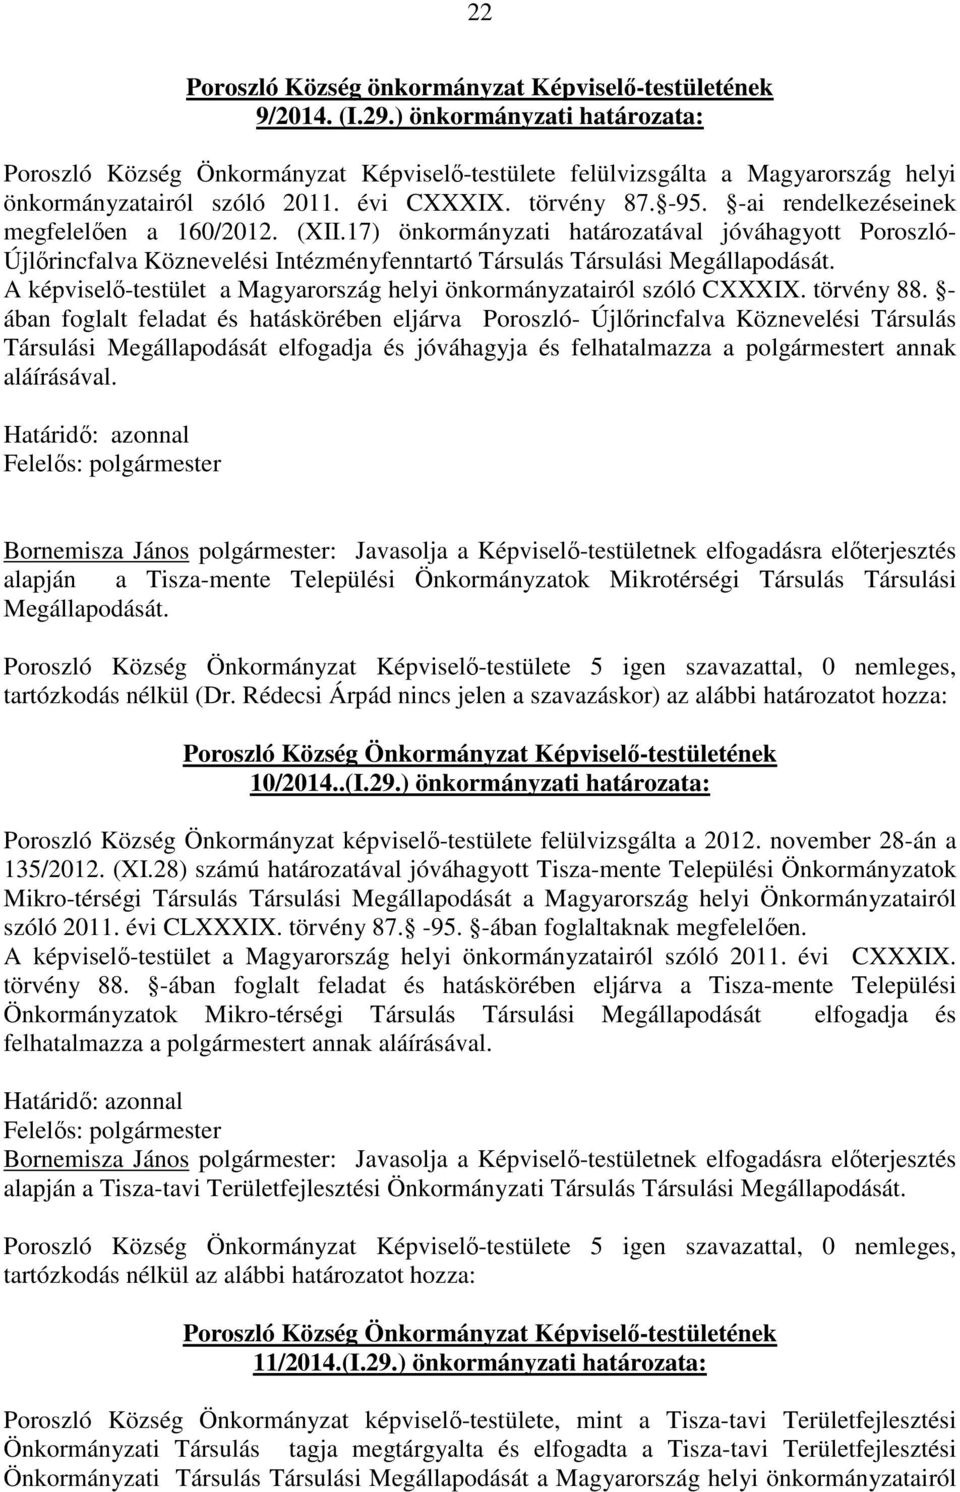 -ai rendelkezéseinek megfelelően a 160/2012. (XII.17) önkormányzati határozatával jóváhagyott Poroszló- Újlőrincfalva Köznevelési Intézményfenntartó Társulás Társulási Megállapodását.